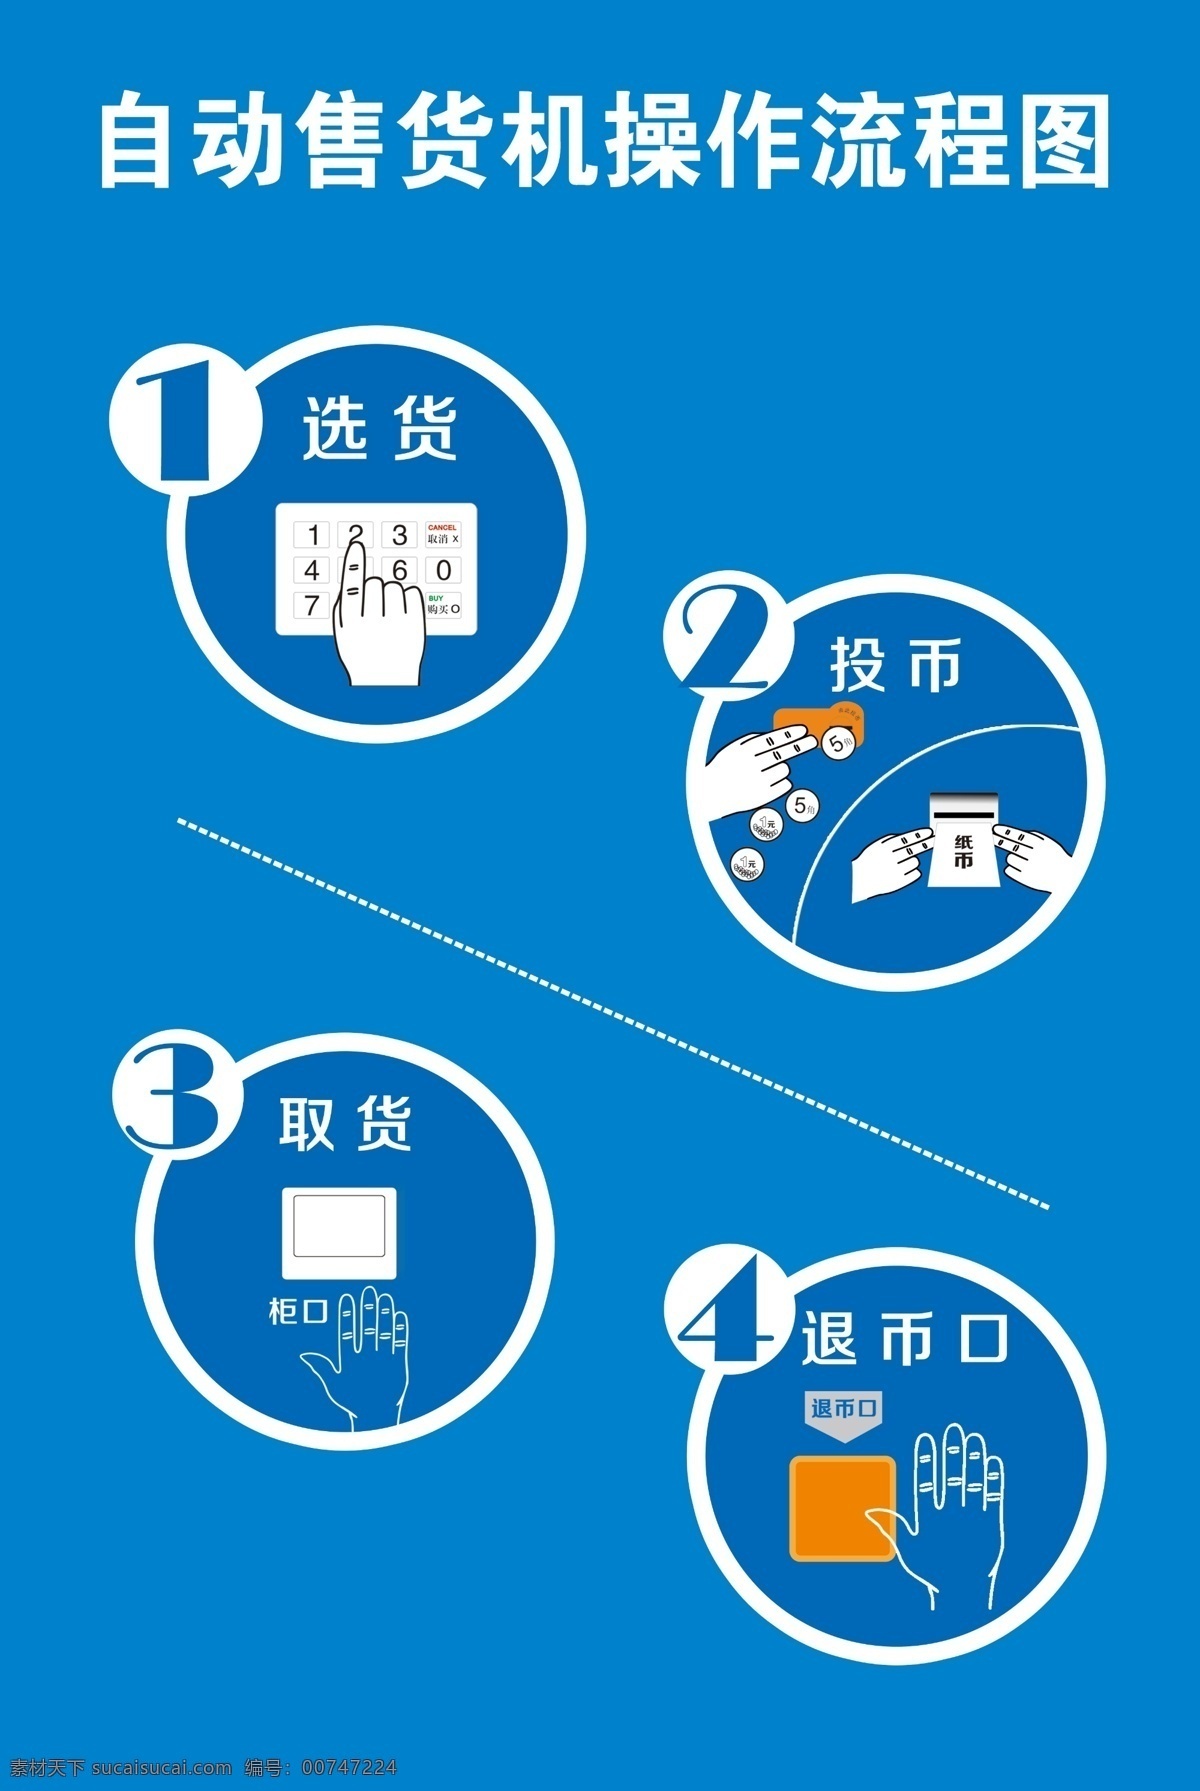 售货机流程图 售货机 流程图 收货流程 售货机步骤 自动贩卖机 步骤图